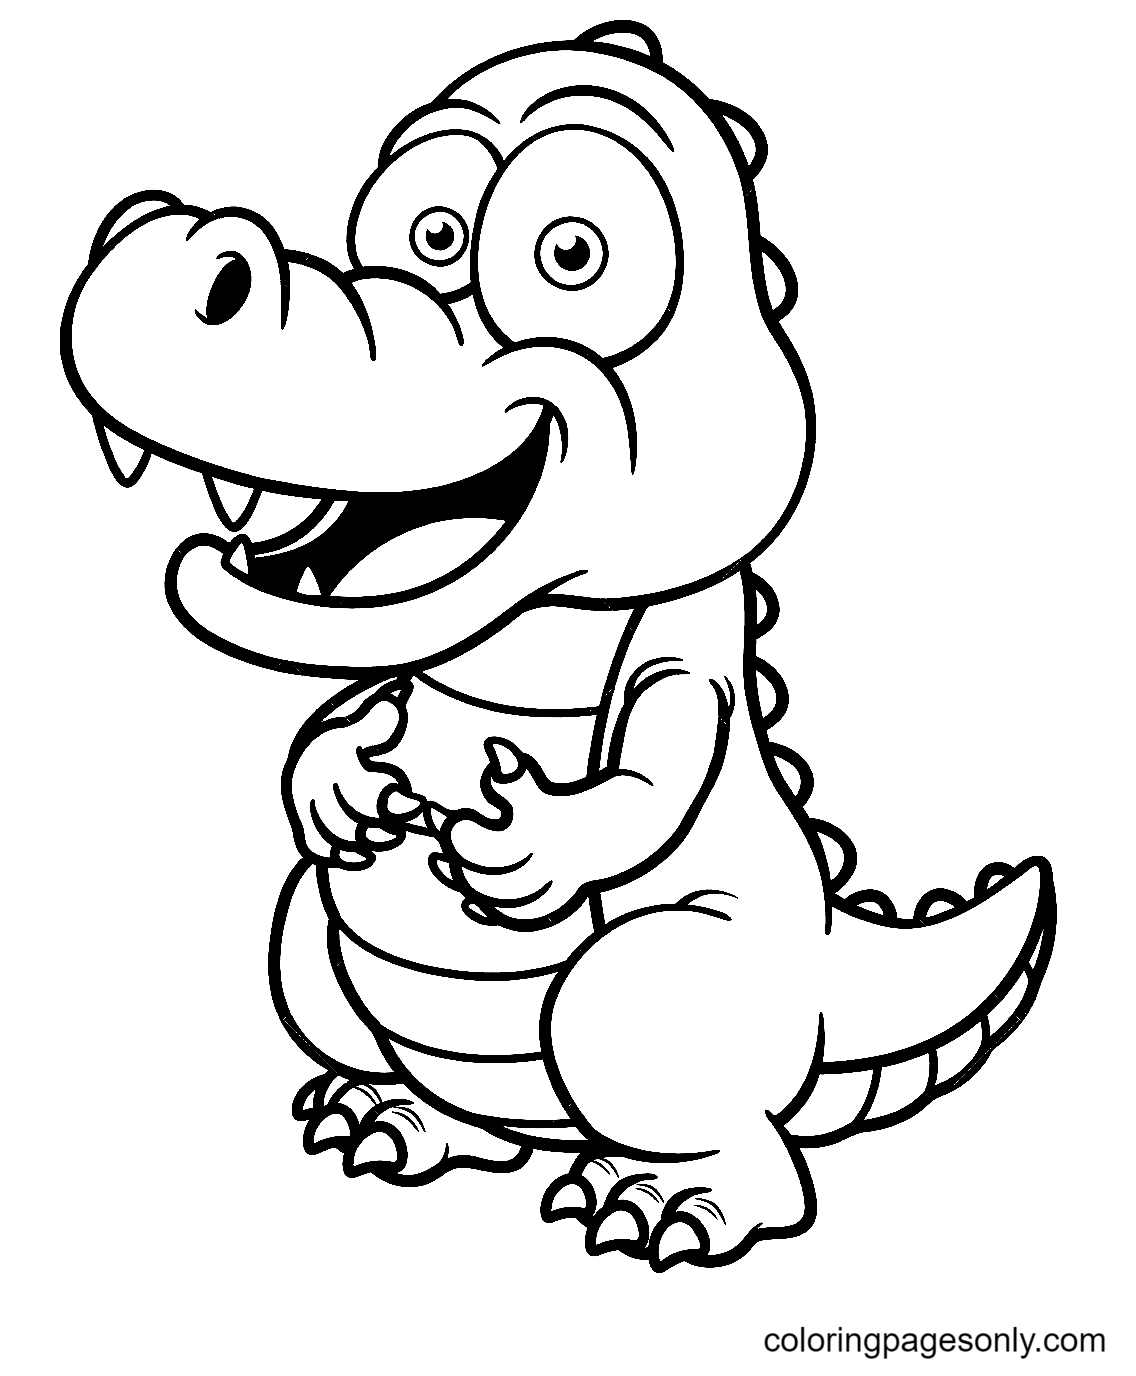 Счастливый маленький аллигатор из мультфильма «Аллигатор»